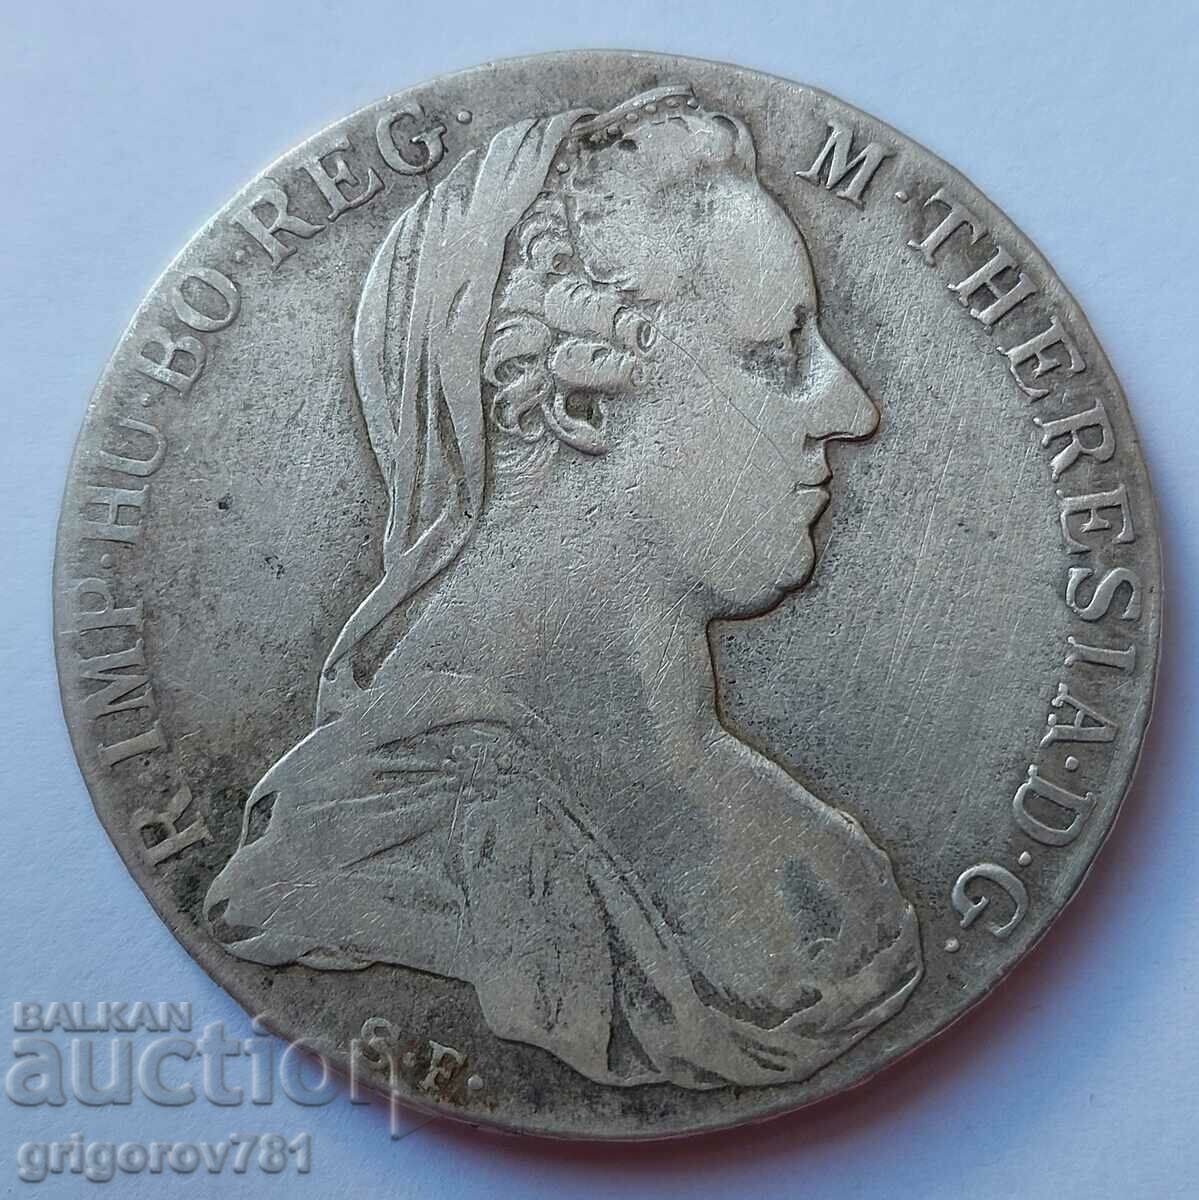 Thaler Silver Austria Maria Theresa - Silver Coin #6